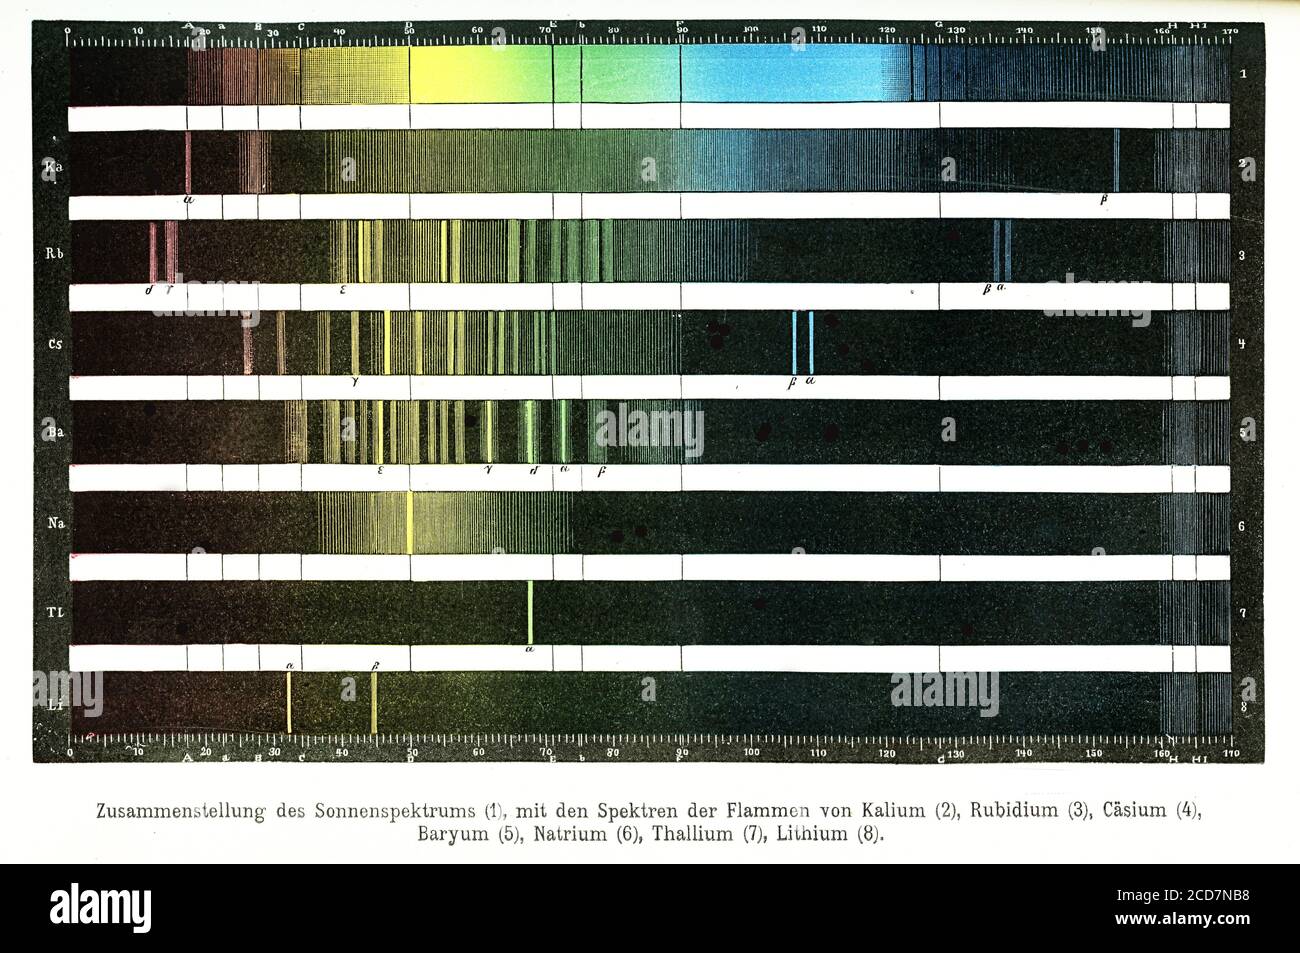 Fraunhofer Lines, insieme di linee scure di assorbimento spettrale nello spettro ottico del Sole, rilevate dal fisico tedesco Joseph von Fraunhofer Foto Stock